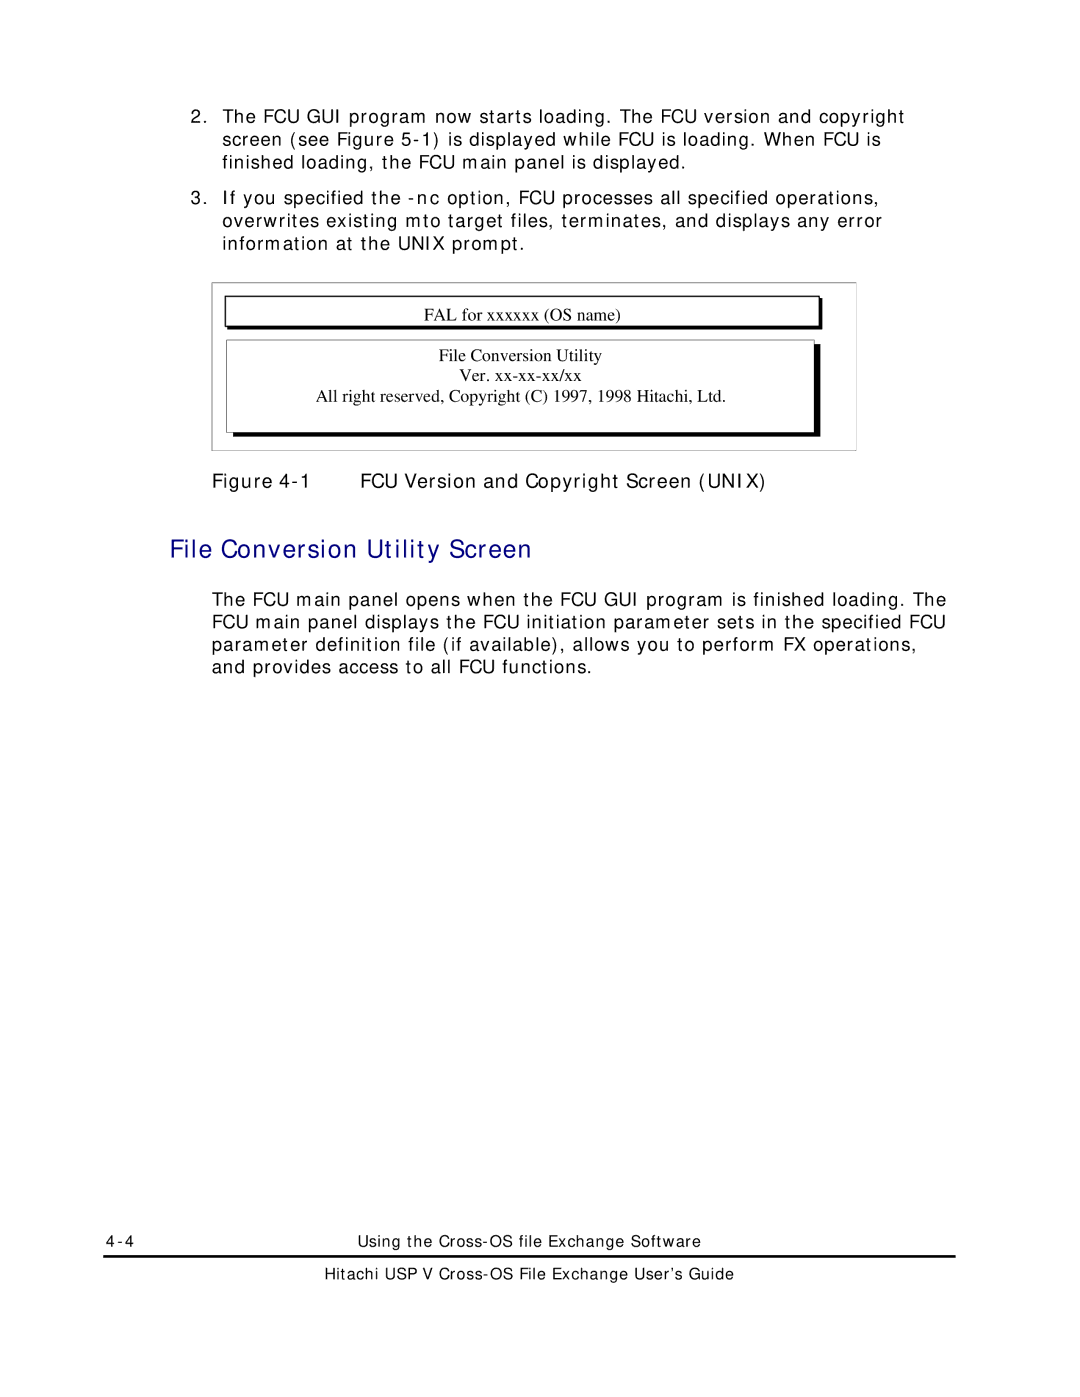 Hitachi MK-96RD647-01 manual File Conversion Utility Screen, FCU Version and Copyright Screen Unix 